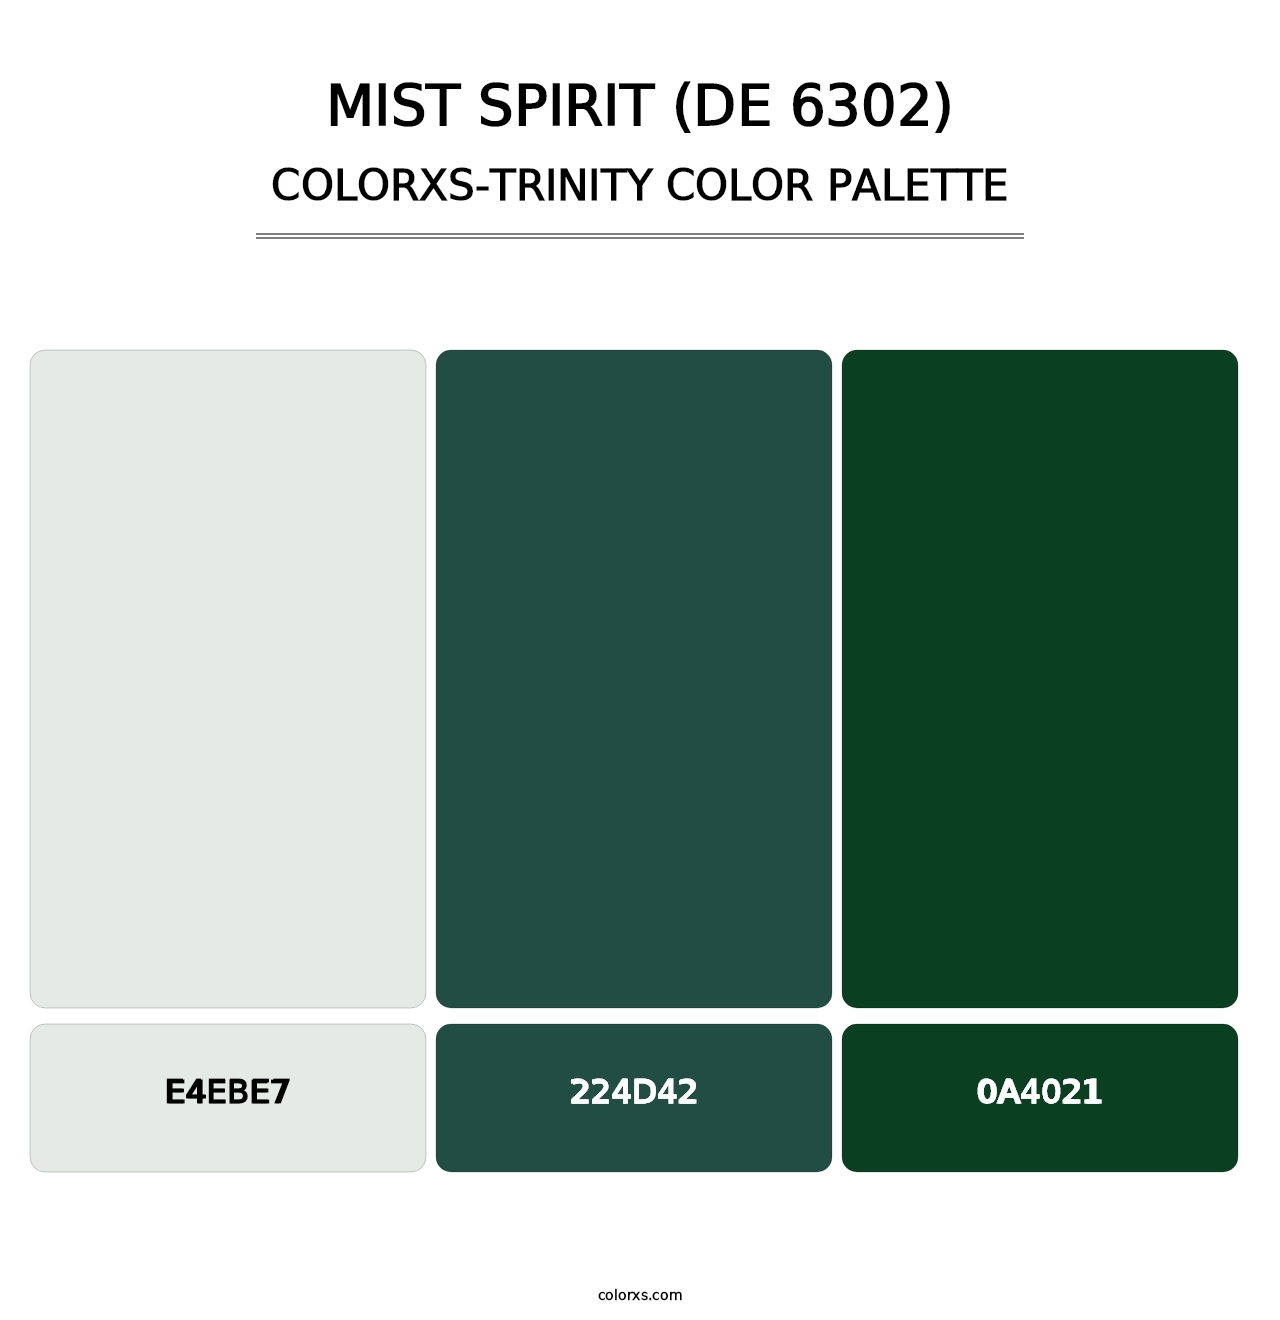 Mist Spirit (DE 6302) - Colorxs Trinity Palette